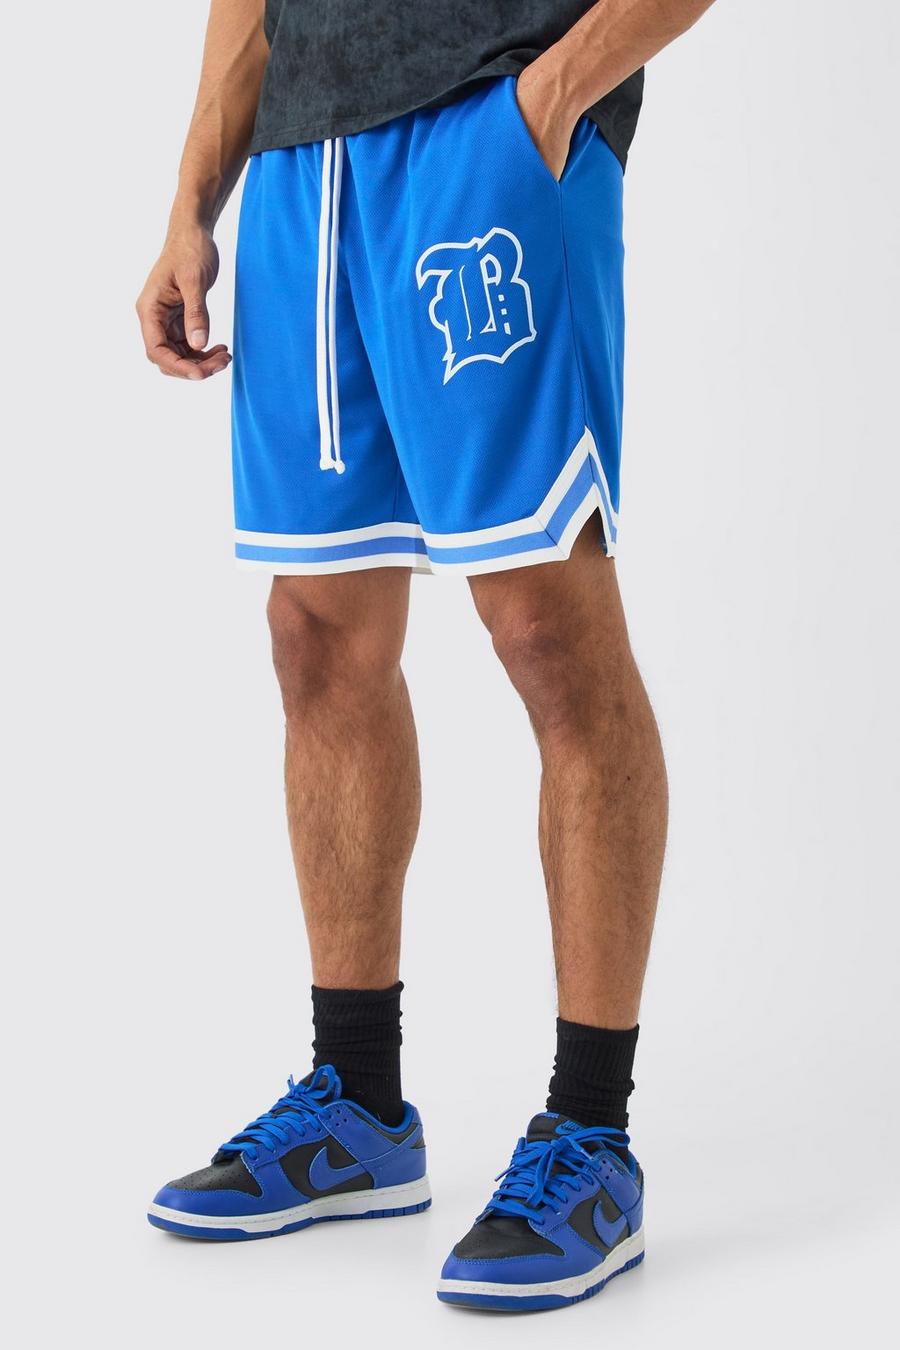 Lockere Mesh Basketball-Shorts mit B-Applikation, Cobalt